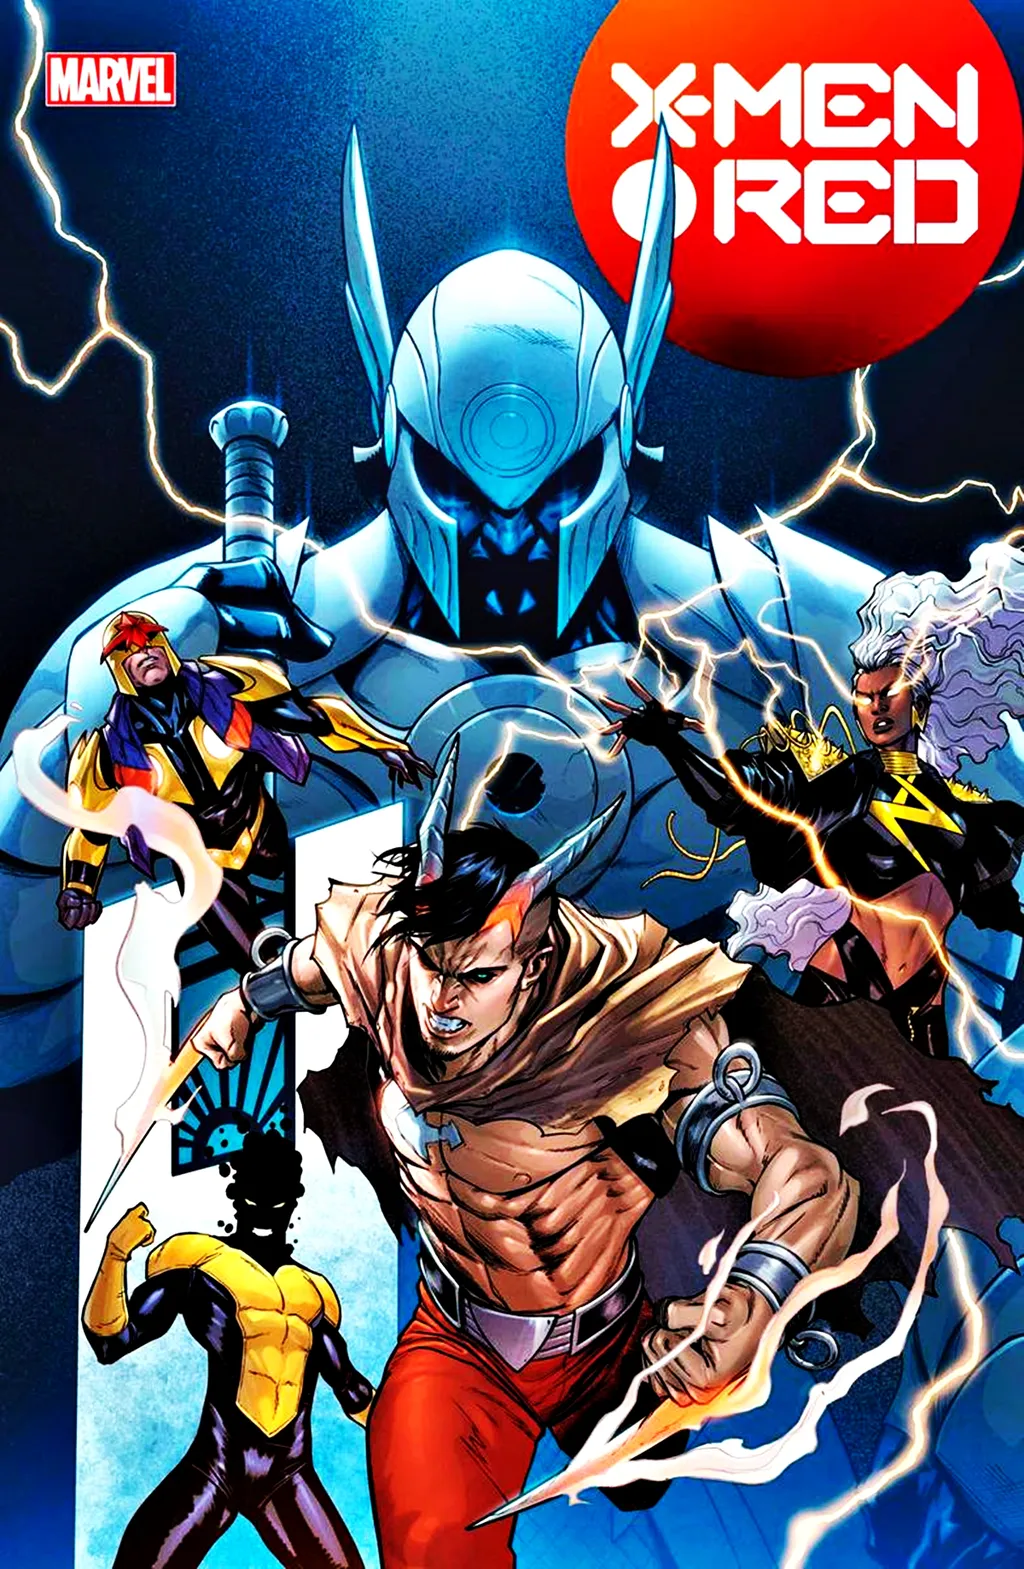 Novo Wolverine de nível Ômega possui suas próprias garras (Imagem: Reprodução/Marvel Comics)